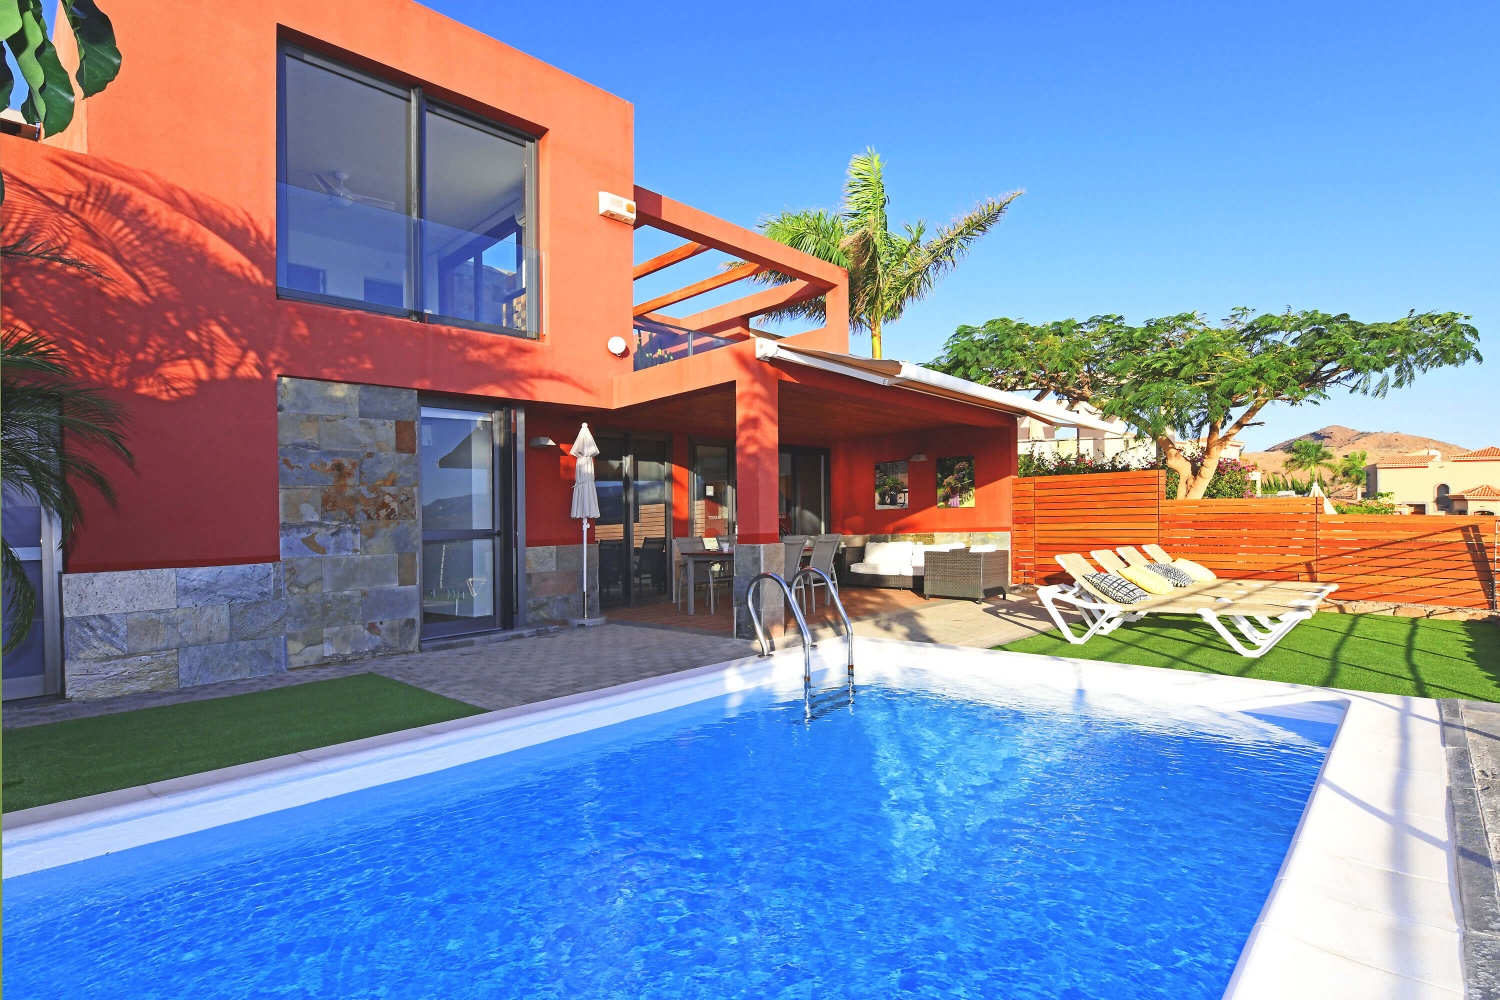 Modern huis met twee slaapkamers met een stijlvol interieur, een geweldig zwembad en een terras met panoramisch uitzicht